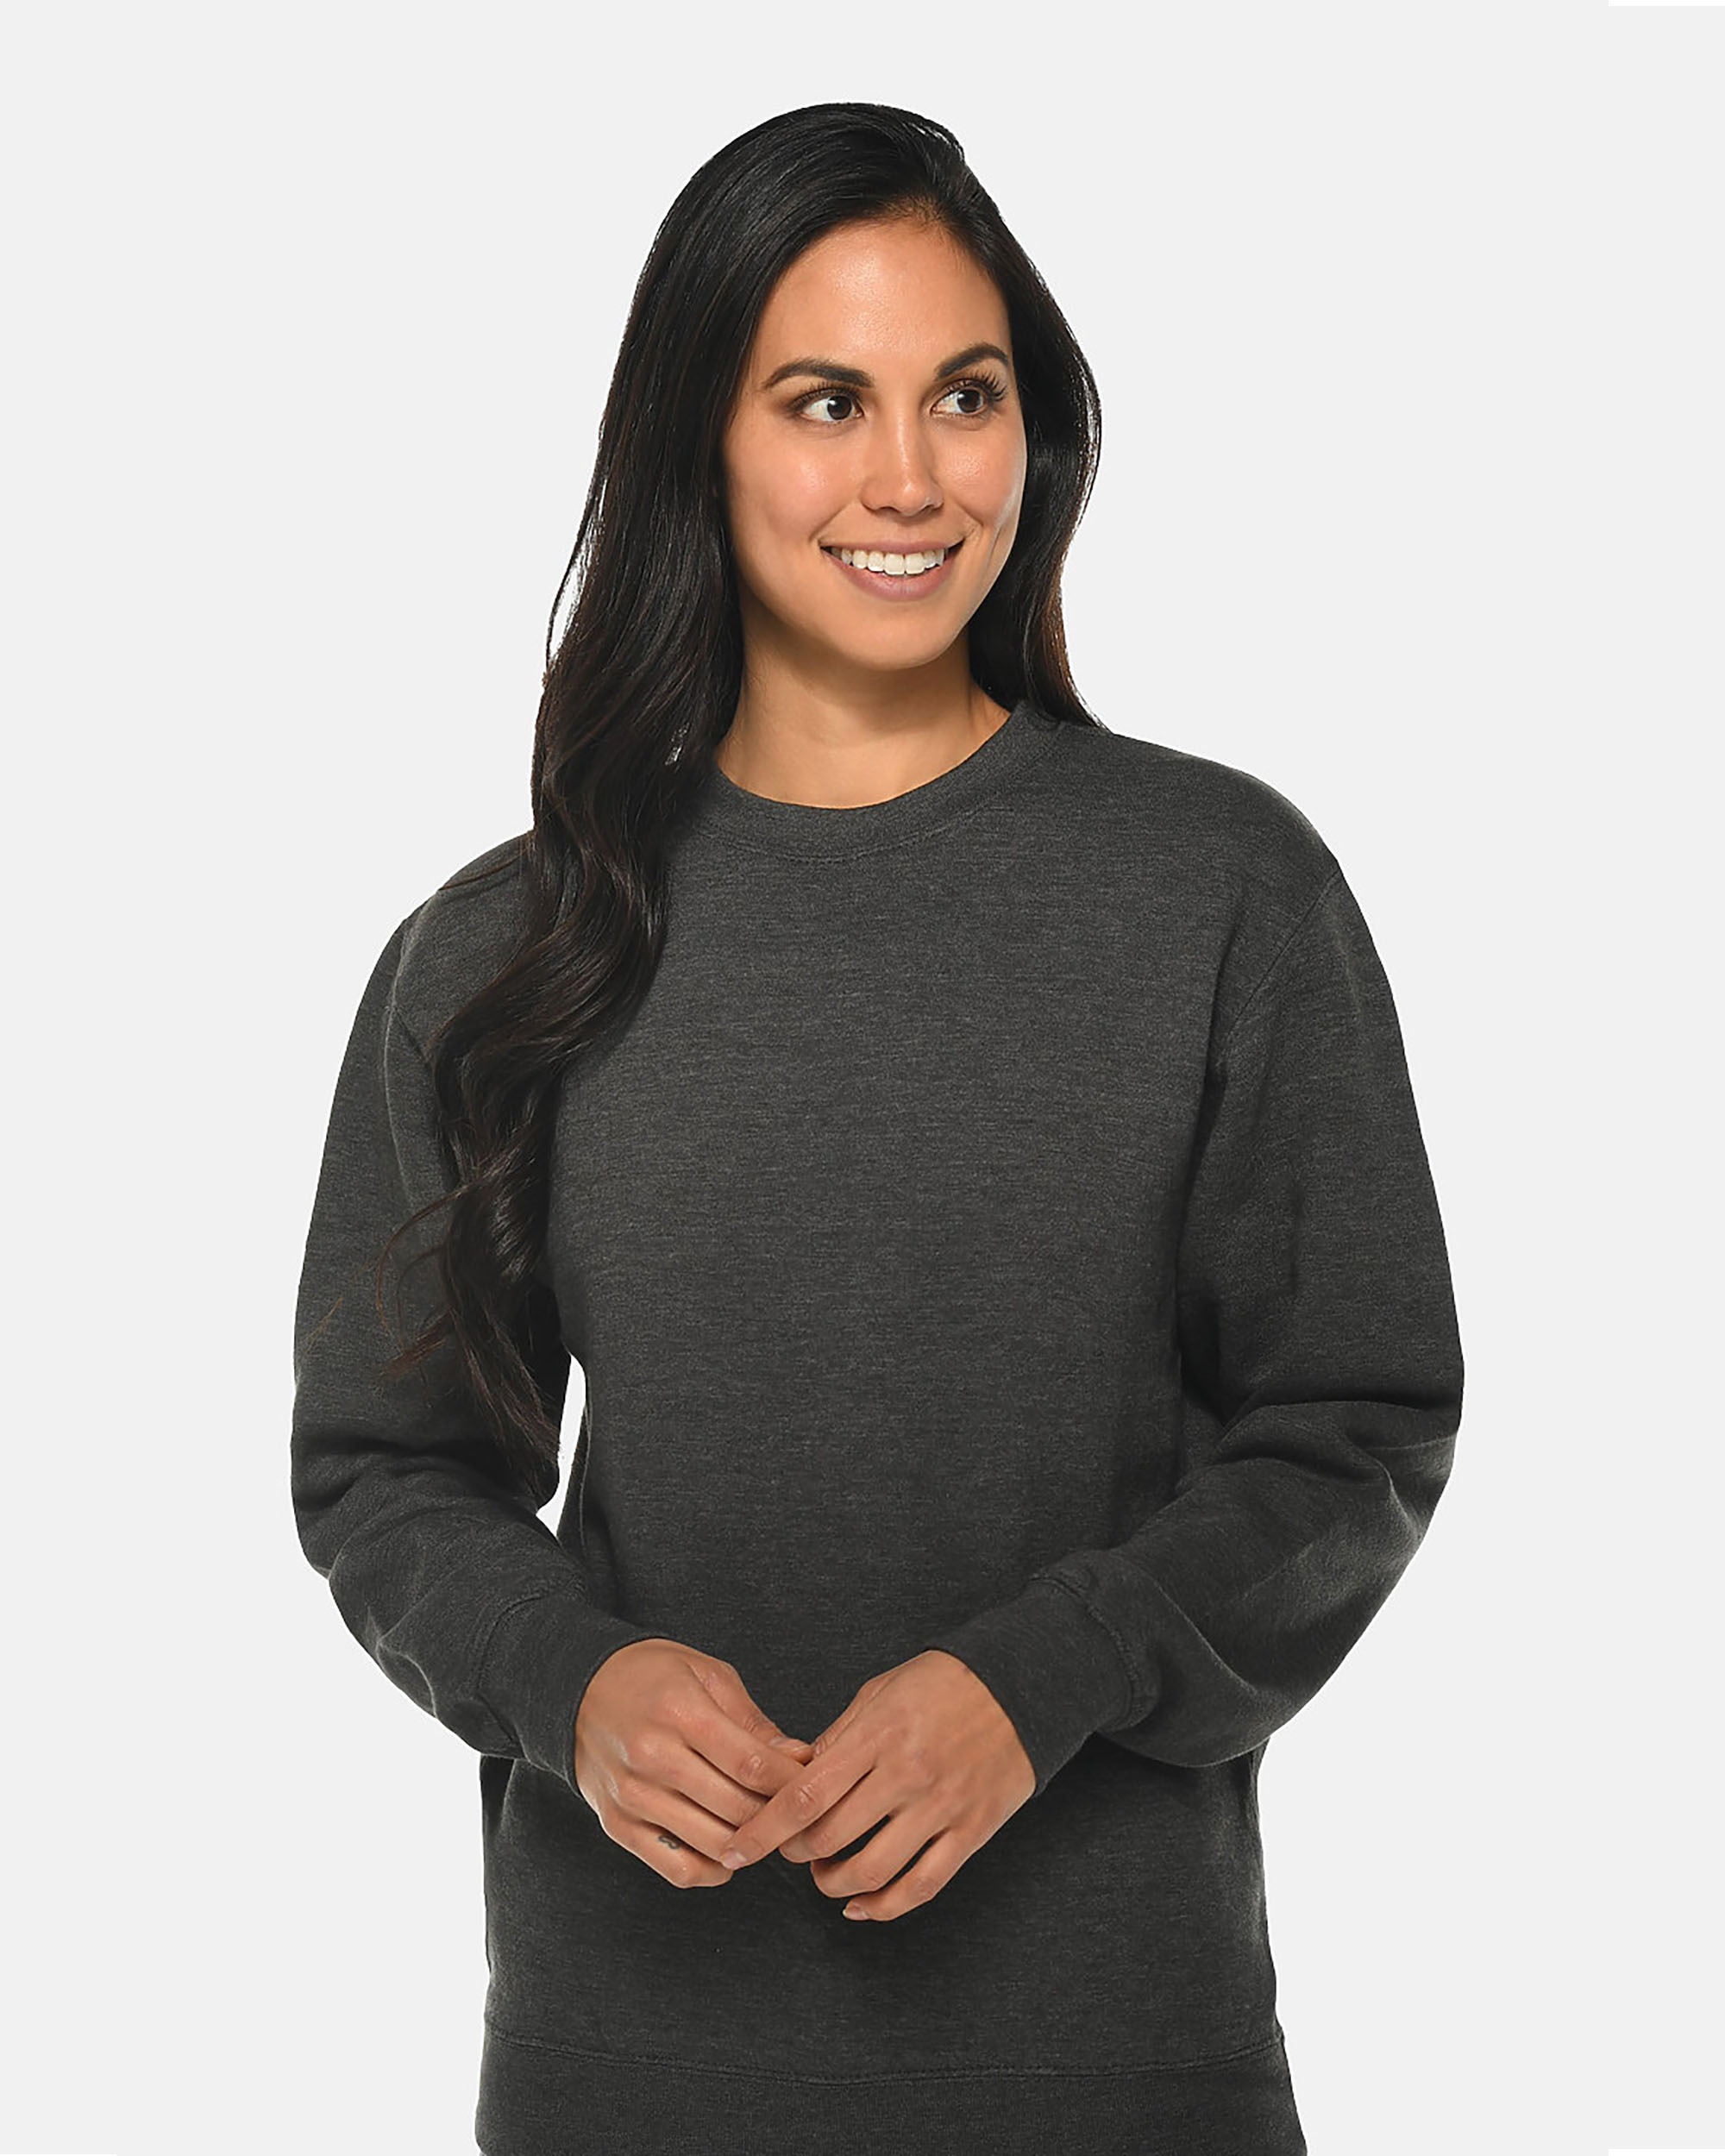 Lane Seven® LS14004 Premium Crewneck Sweatshirt, shown in Charcoal Heather